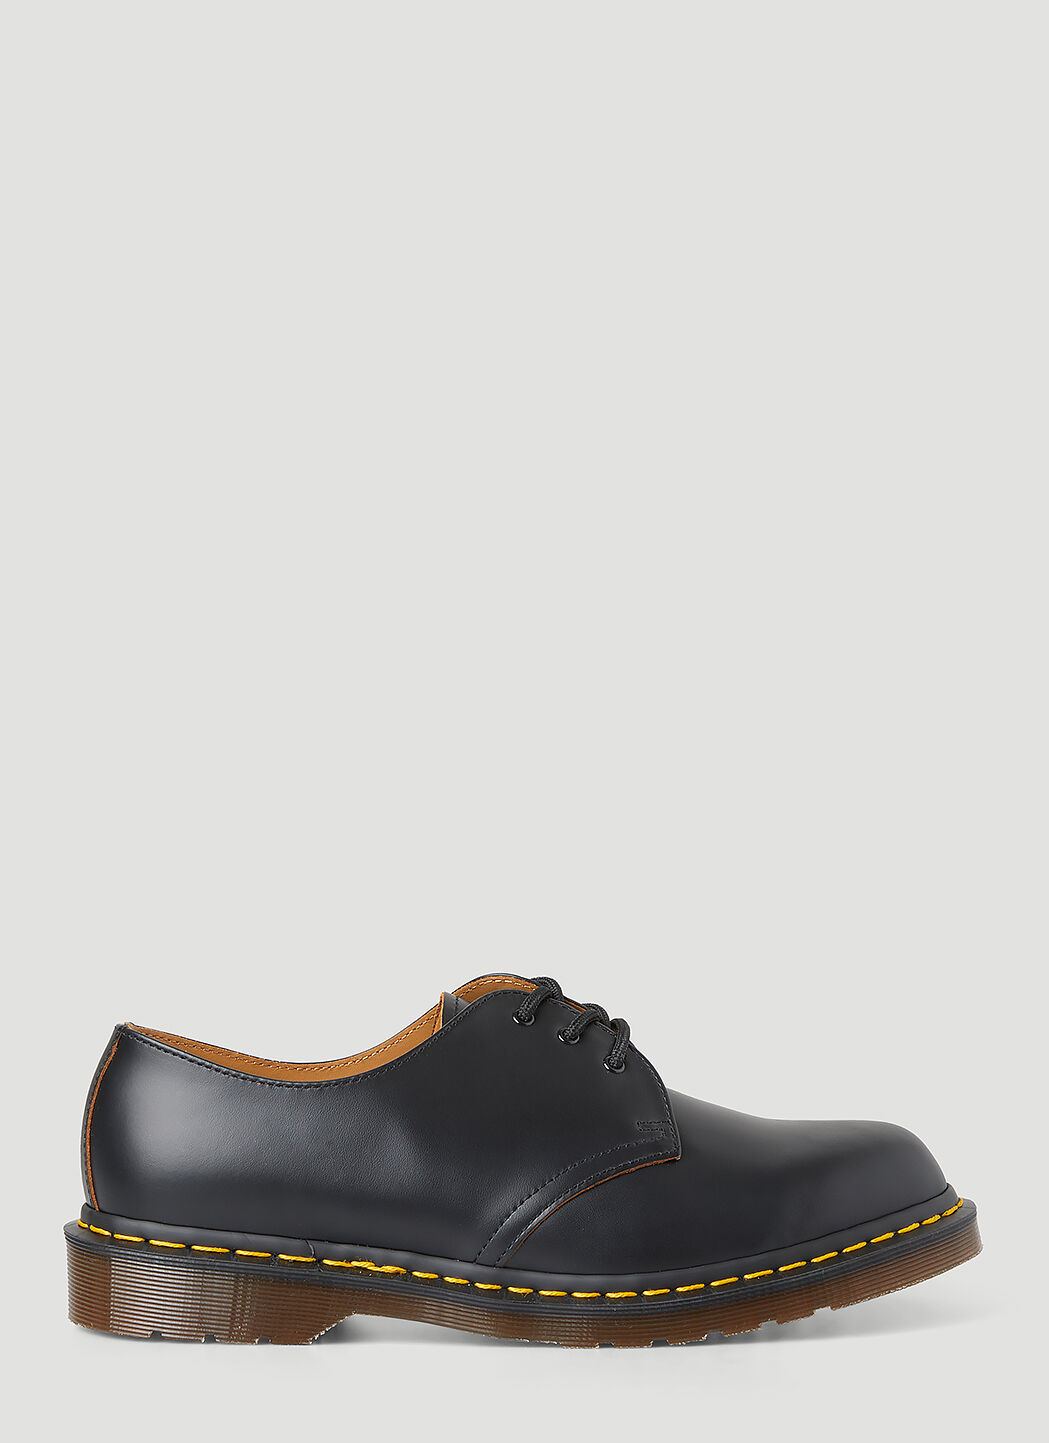 Rick Owens x Dr. Martens Vintage 1461 Tech Shoes Black rod0256003